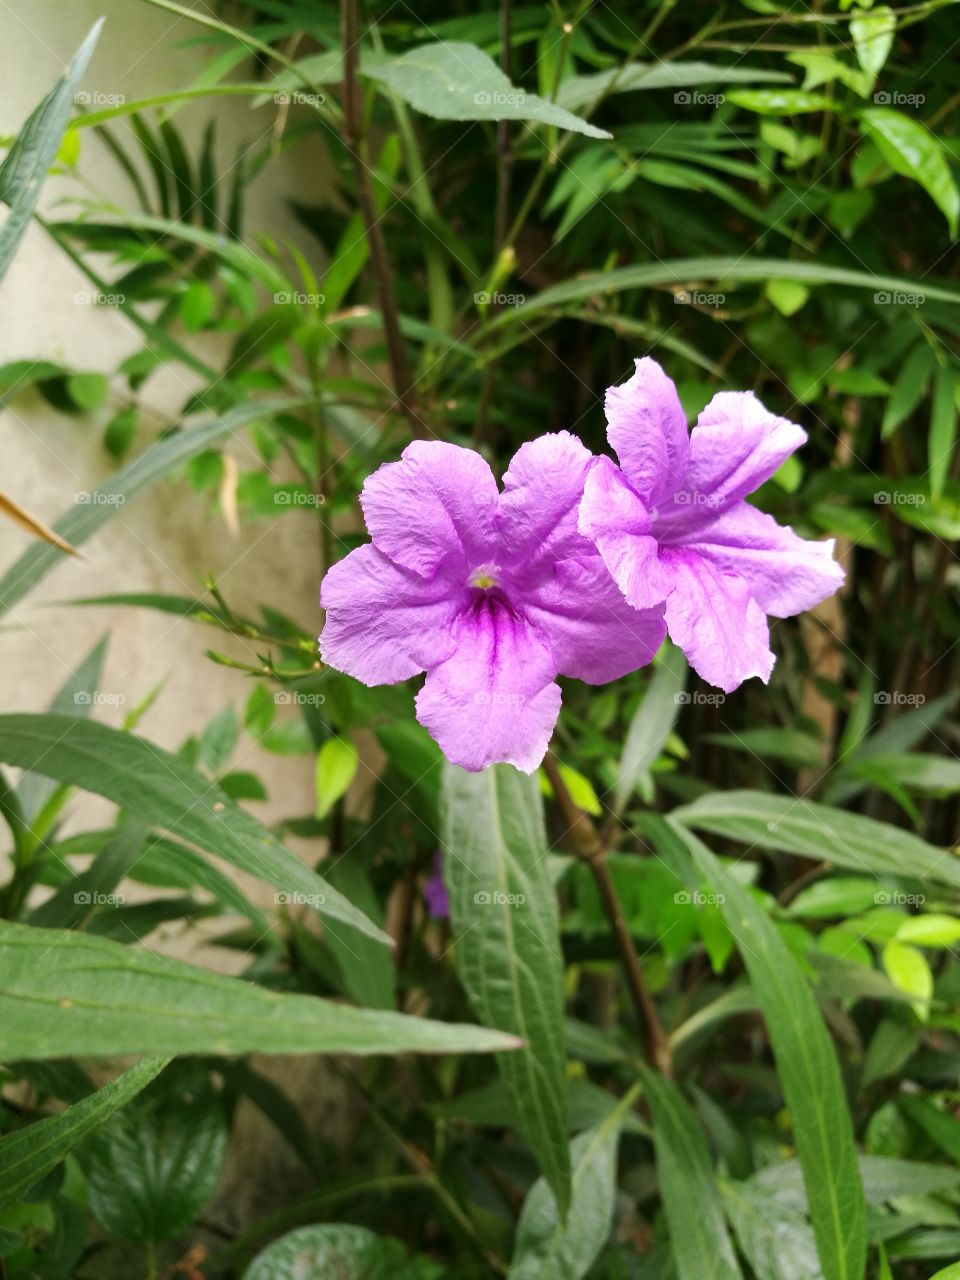 Two beautiful purple flowers blooming in garden.